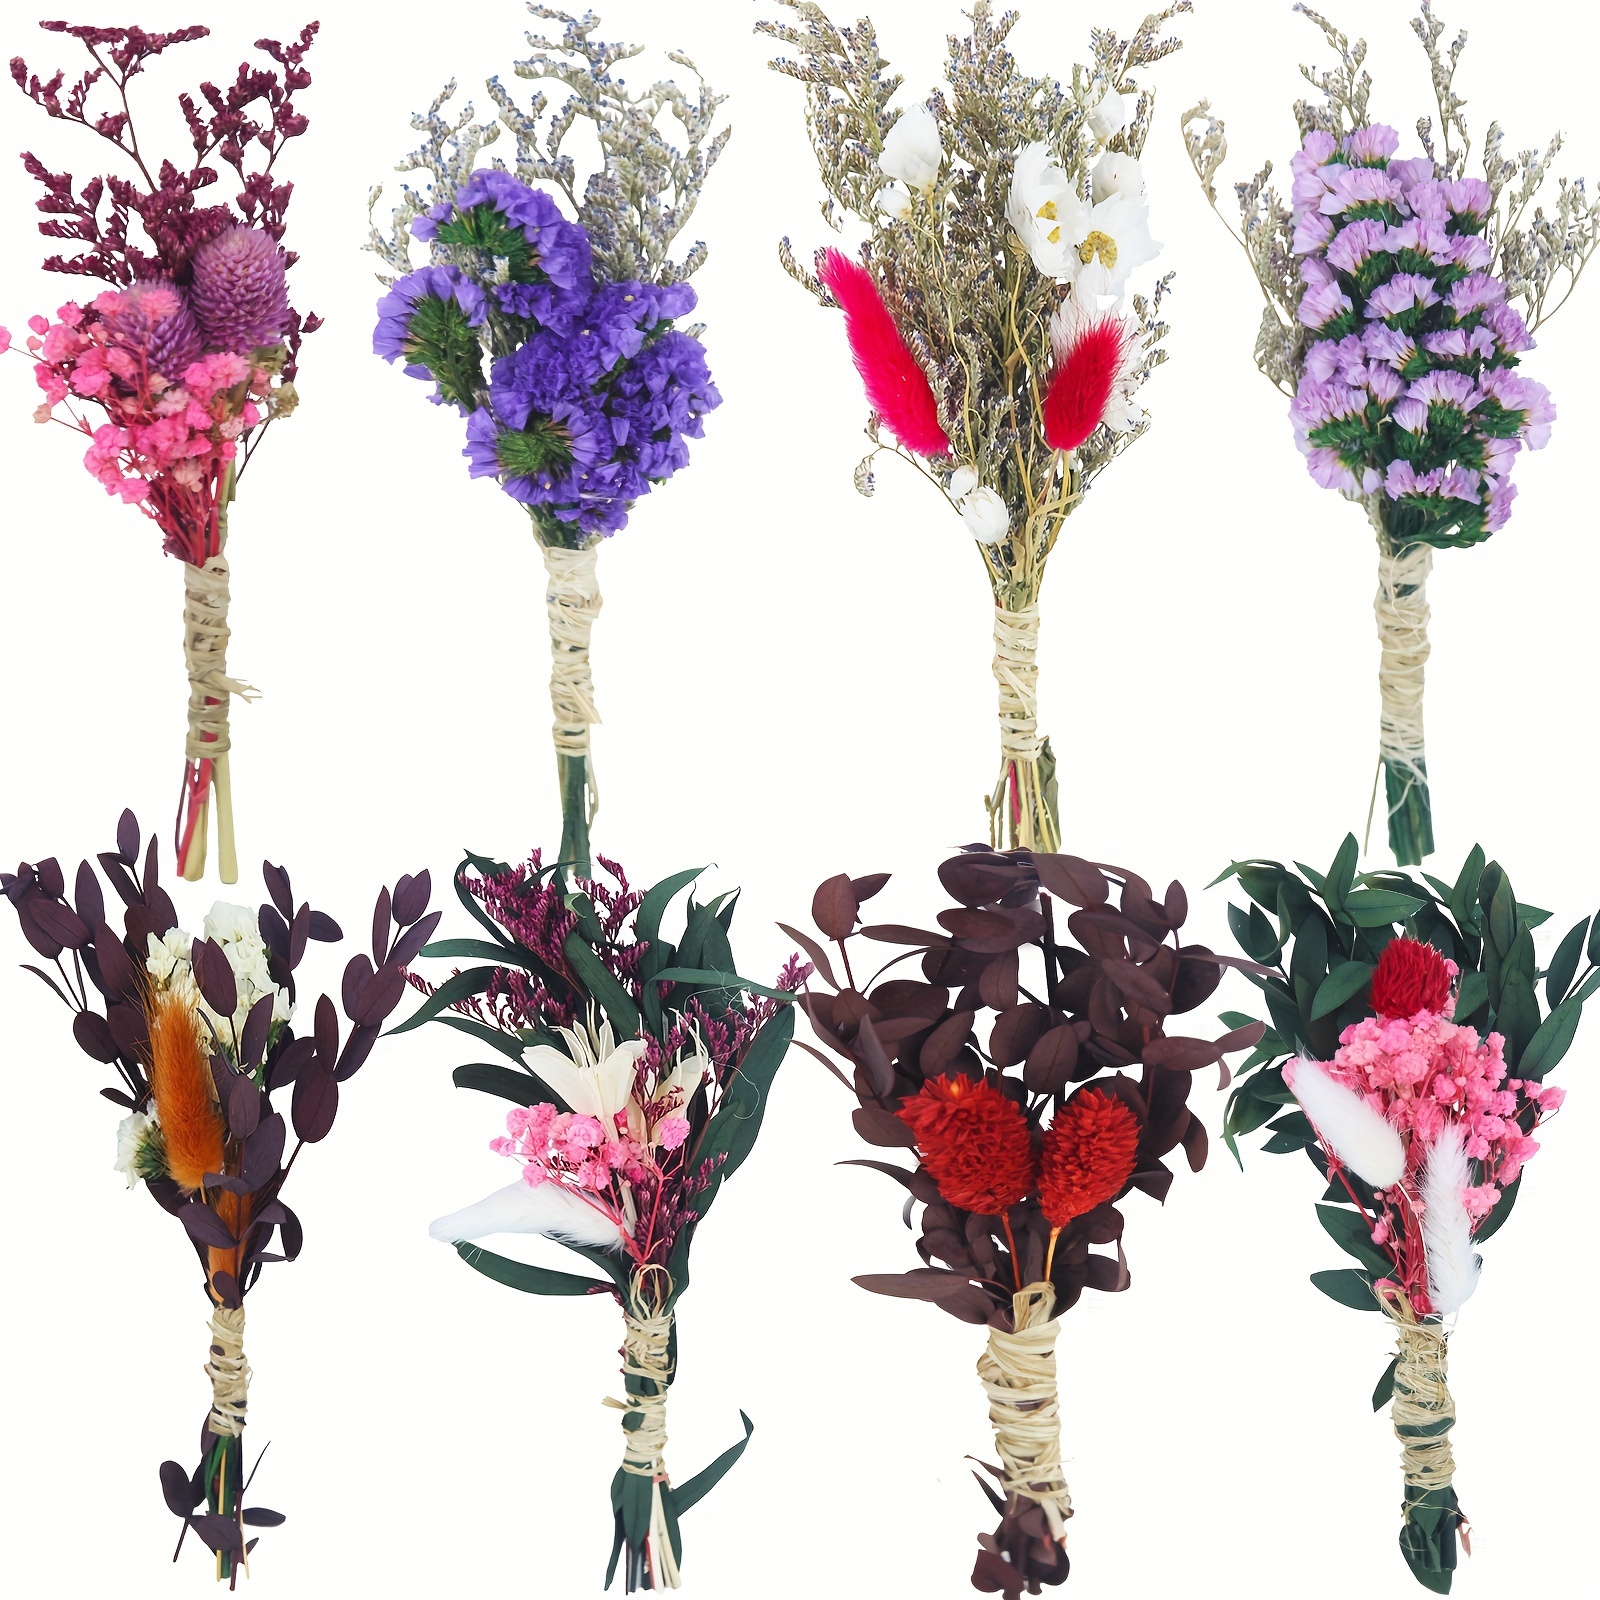 Как засушить гербарий из полевых цветов: делимся знаниями, советами и секретами